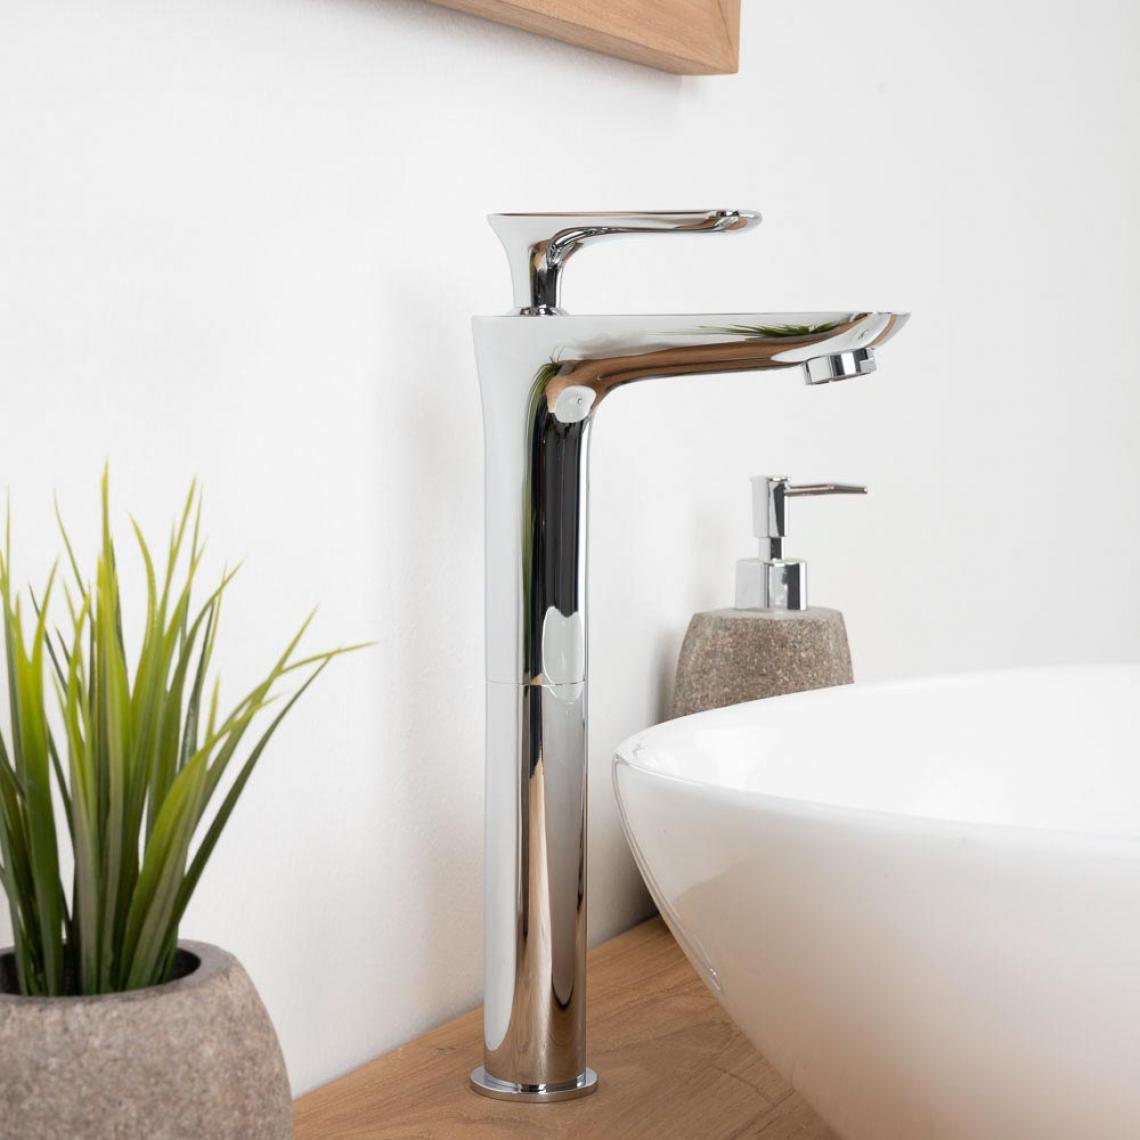 Wanda Collection - Robinet haut pour vasque salle de bain Ems chrome - Robinet de lavabo